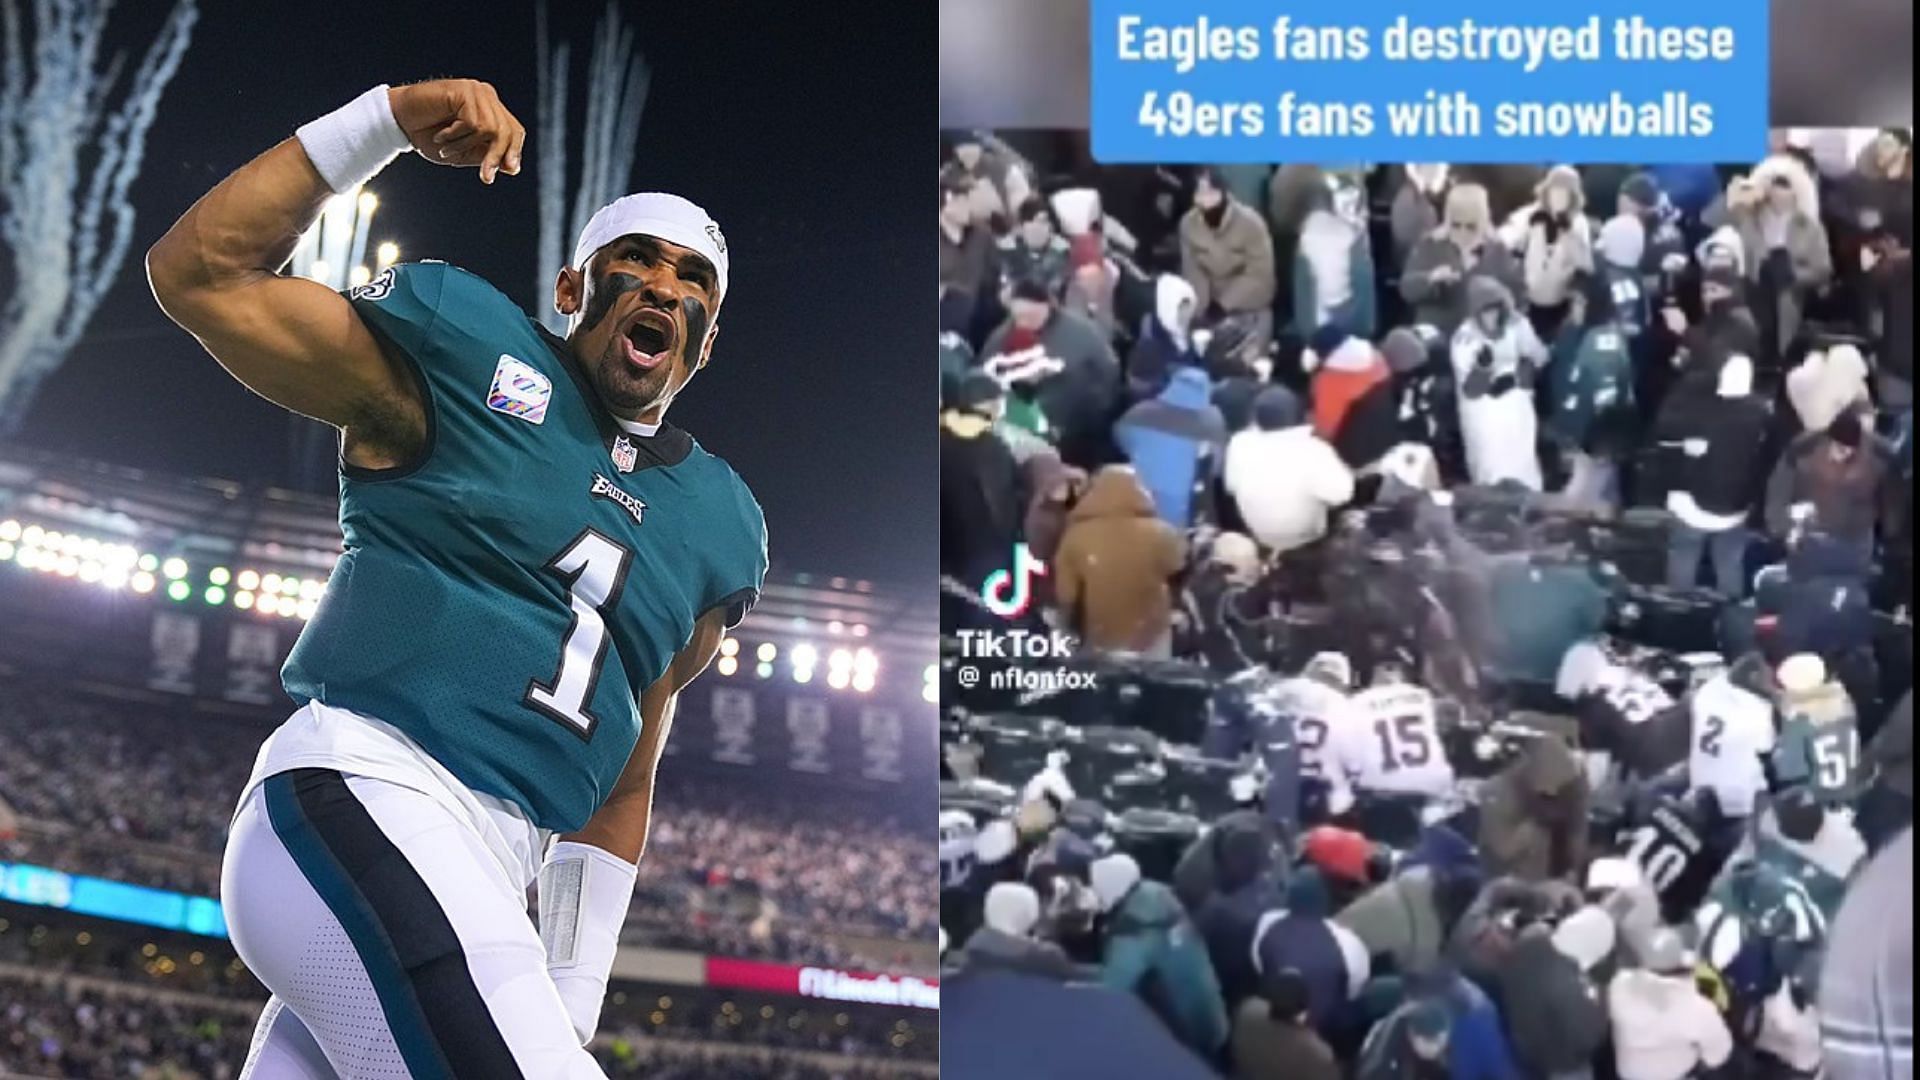 NFL supporters label Philadelphia Eagles fanbase ‘worst in NFL’ over